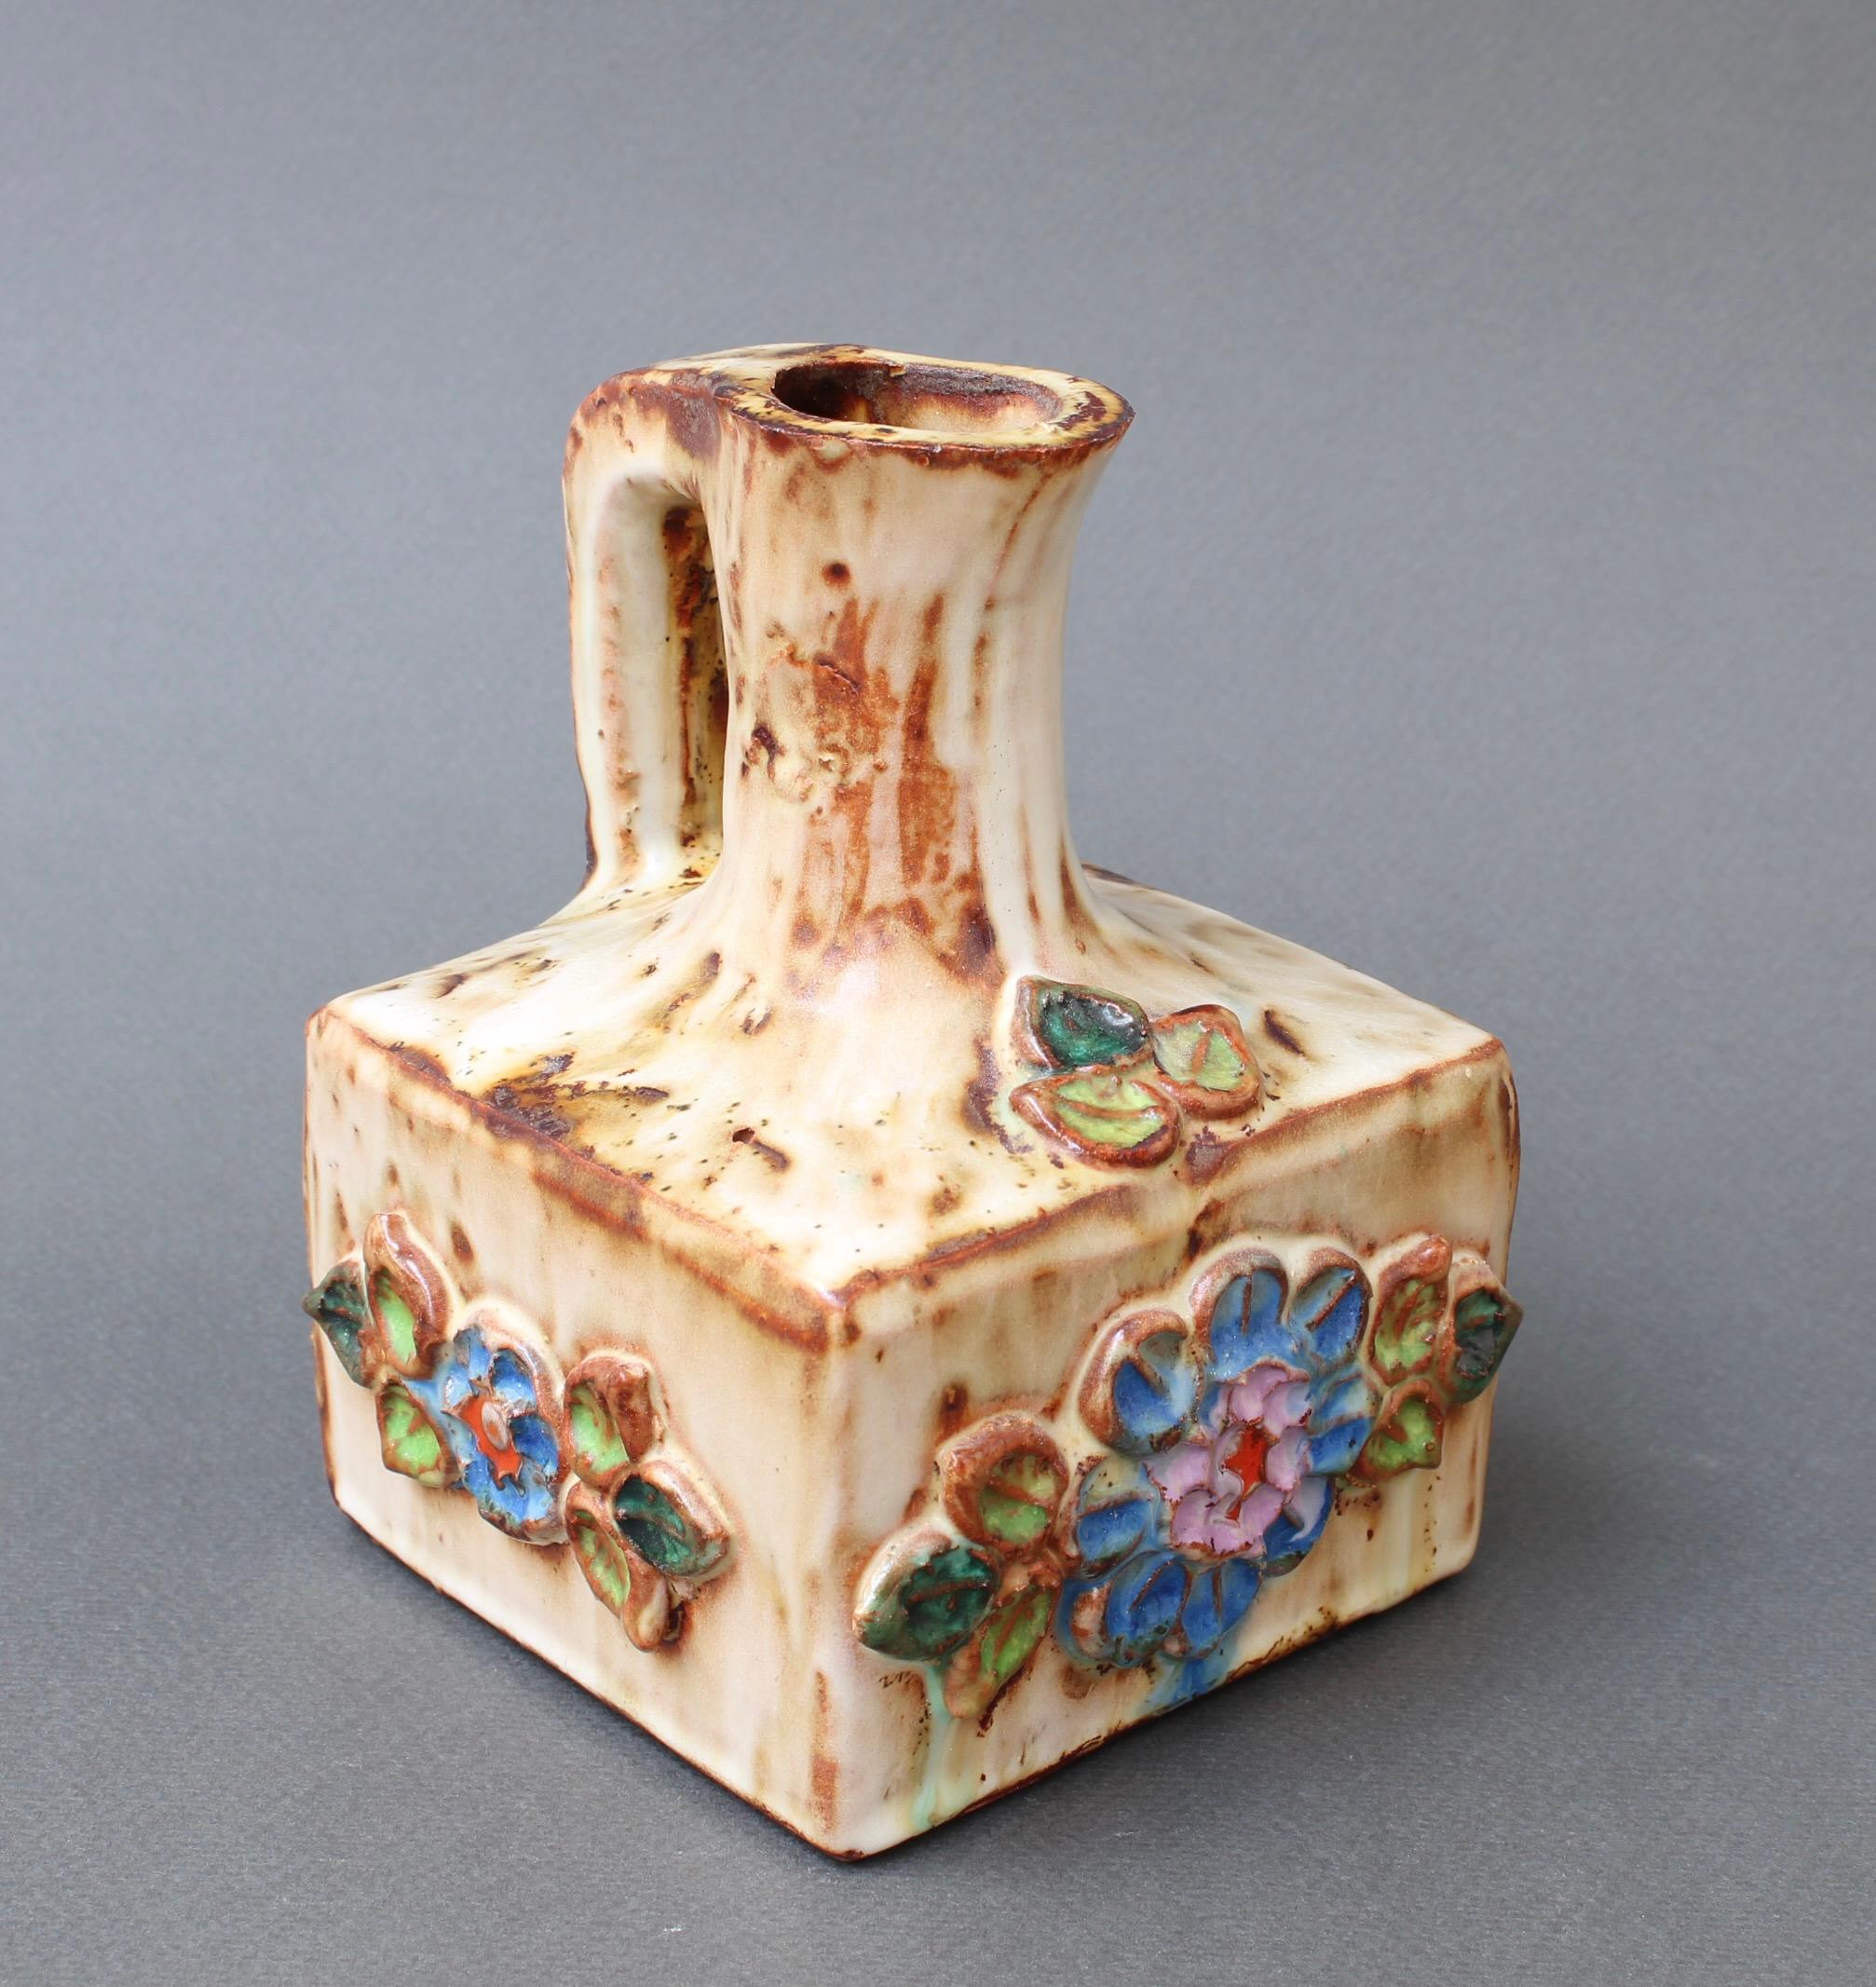 Vintage Französisch Keramik Blumenmotiv Krug von La Roue, Vallauris, Frankreich (ca. 1960er Jahre). Ein charmantes, dekoratives Stück mit rustikalen und farbenfrohen Details. Die Keramik hat einen kleinen Maßstab und eine quadratische Grundfläche.